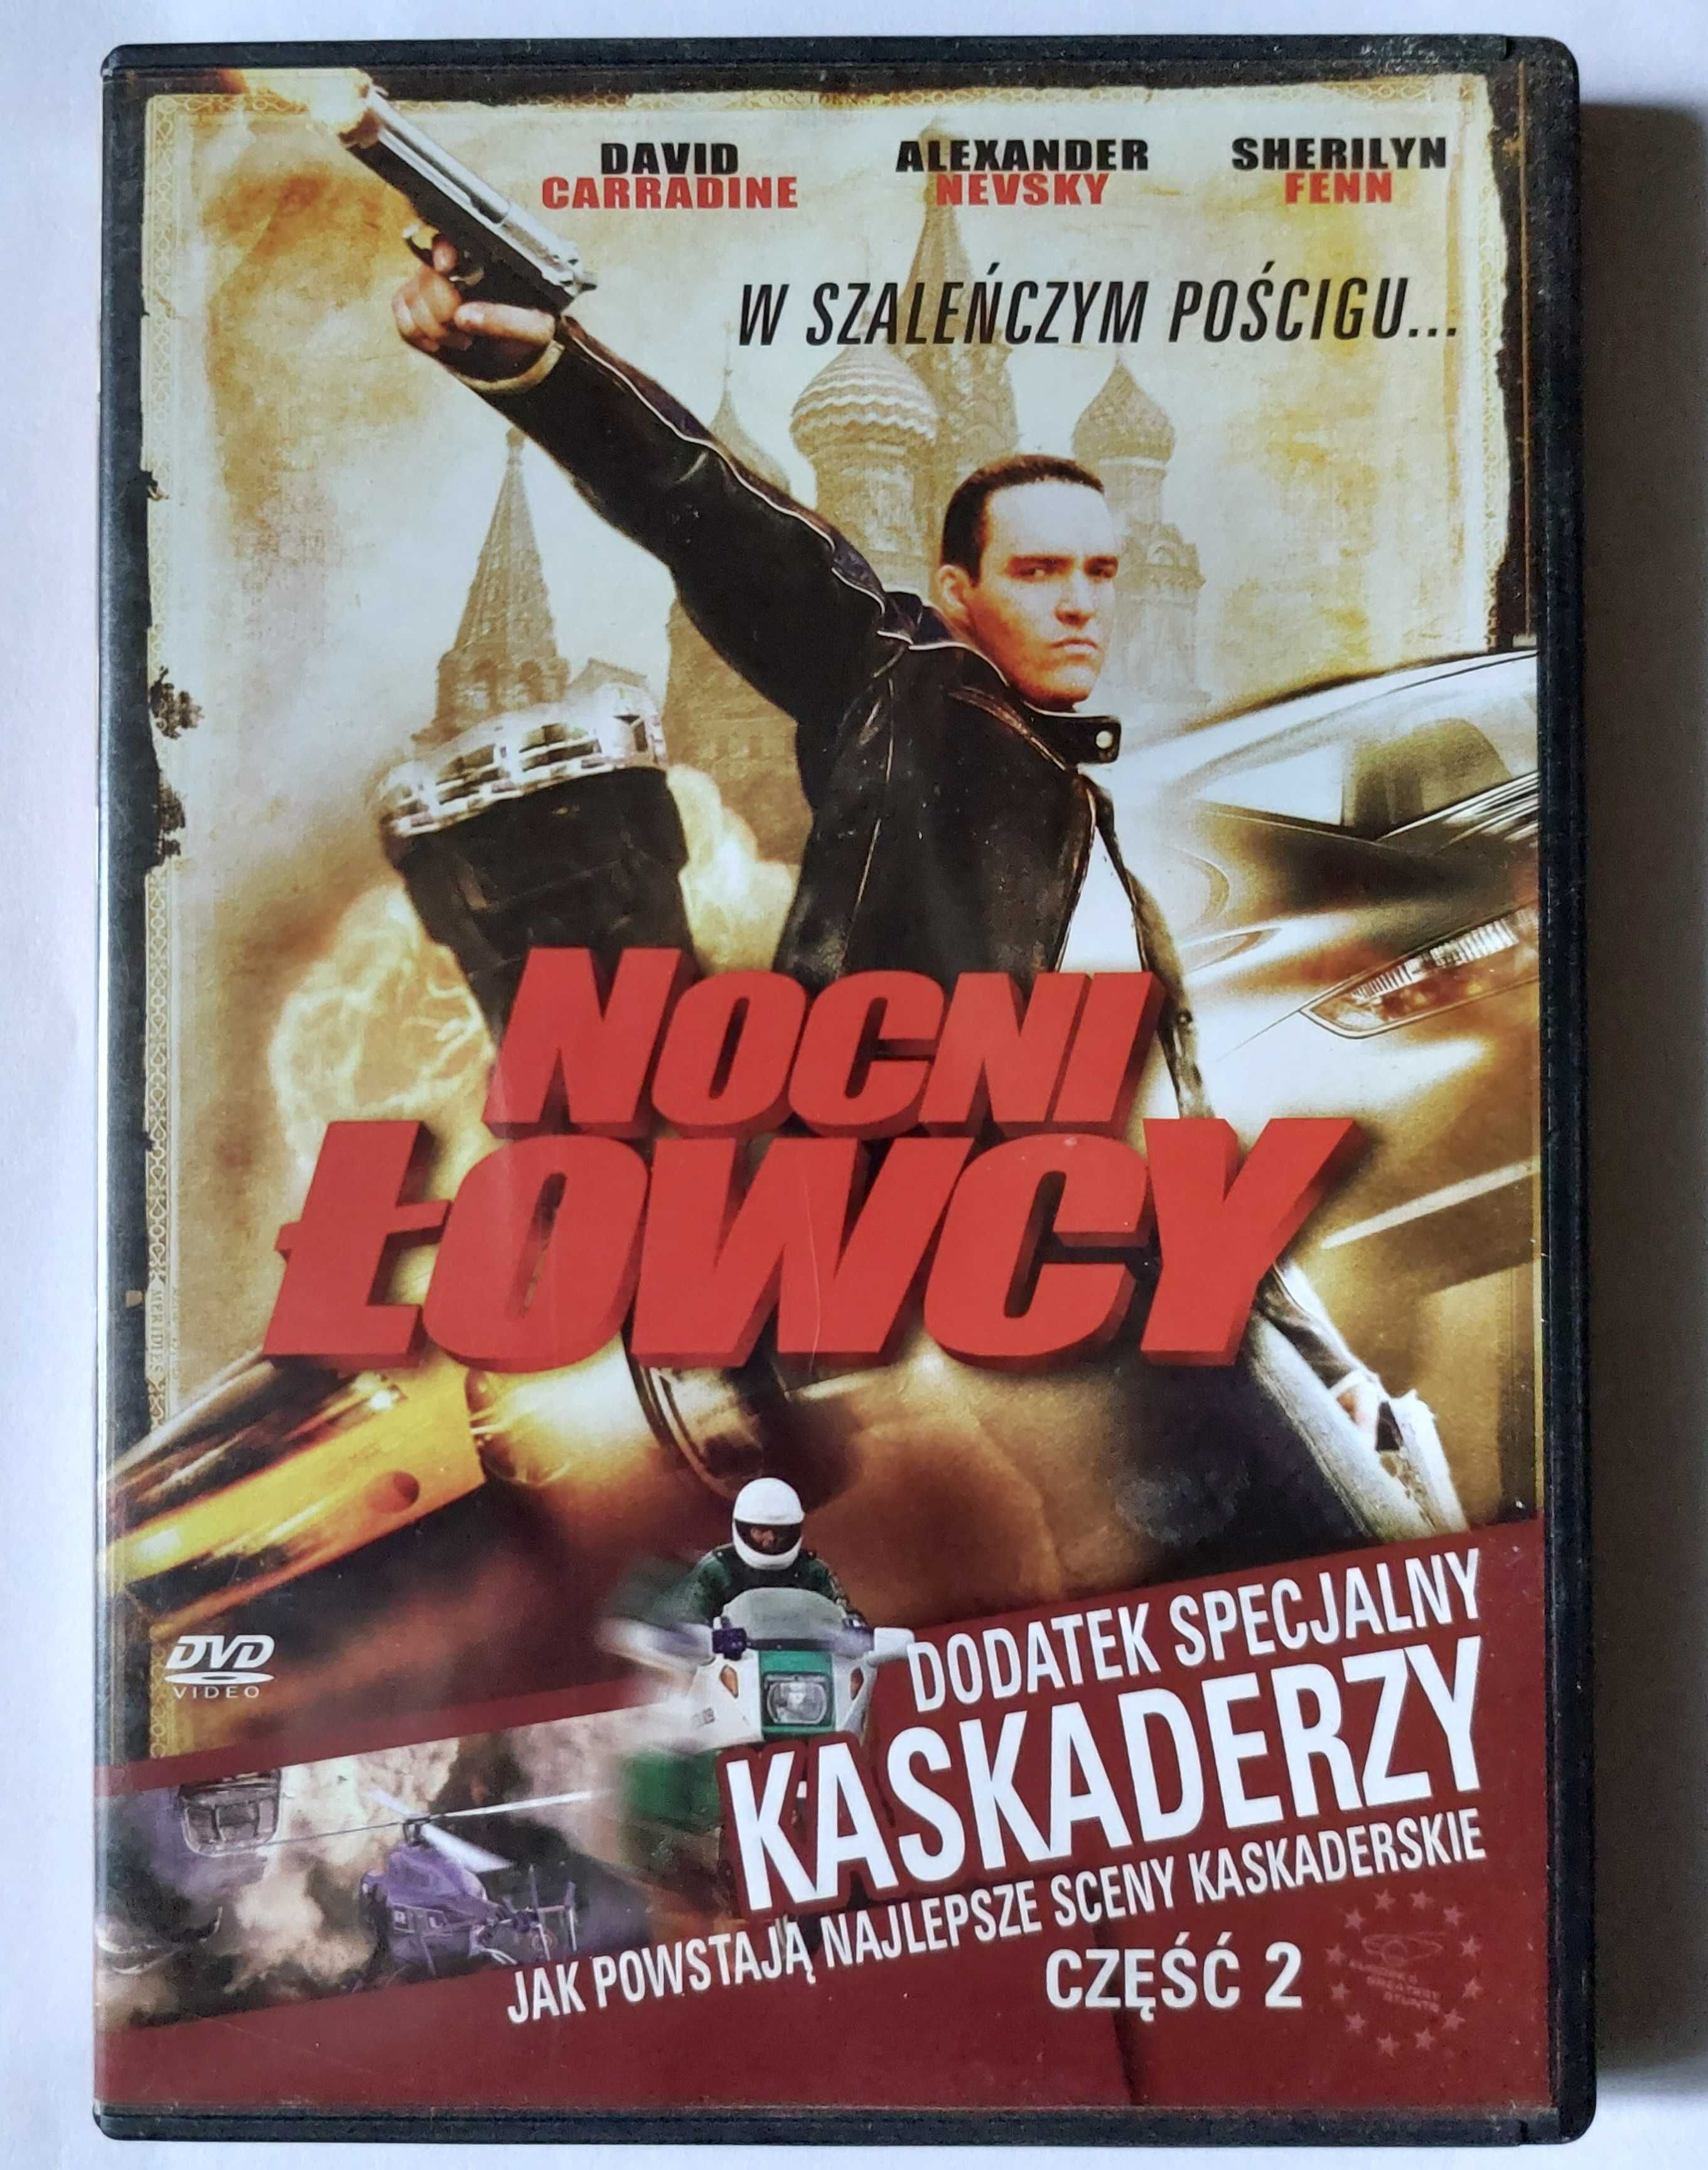 NOCNI ŁOWCY: w szaleńczym pościgu | film po polsku na DVD